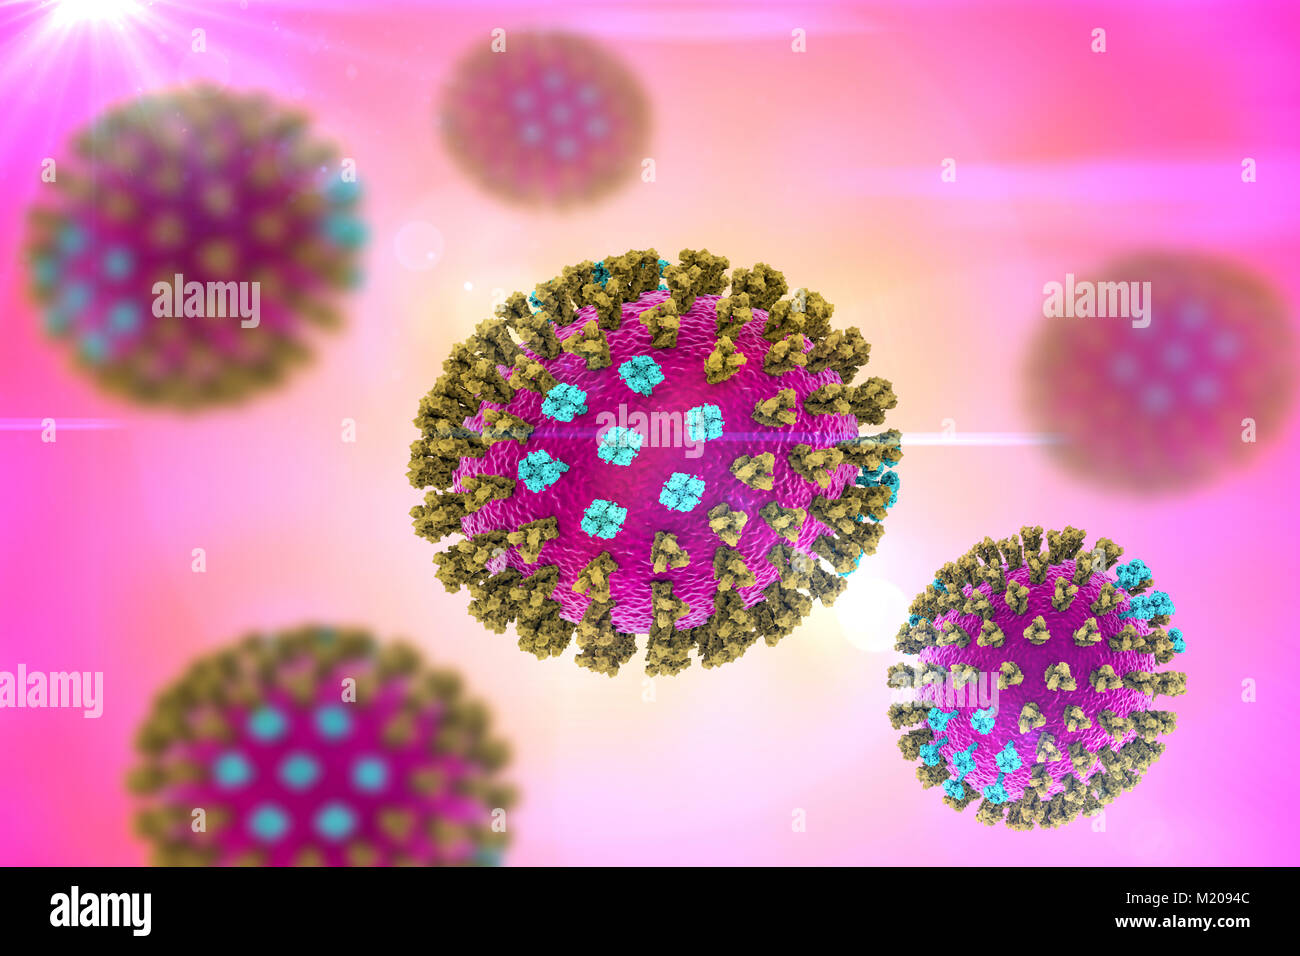 Les virus de la grippe, la souche du Michigan, illustration de l'ordinateur. Chaque virus est constitué d'un noyau d'ARN (acide ribonucléique) le matériel génétique entouré par une couche de protéines (violet). Intégré dans les armoiries sont des protéines de surface (pics). Il y a deux types de protéines de surface, l'hémagglutinine (vert) et la neuraminidase (bleu), et chaque existe dans plusieurs sous-types. Les deux protéines de surface sont associées à la pathogénicité d'un virus. L'hémagglutinine se lie aux cellules de l'hôte, ce qui permet au virus d'entrer et de les reproduire. La neuraminidase permet à de nouvelles particules pour quitter l'hôte après la réplication. Banque D'Images